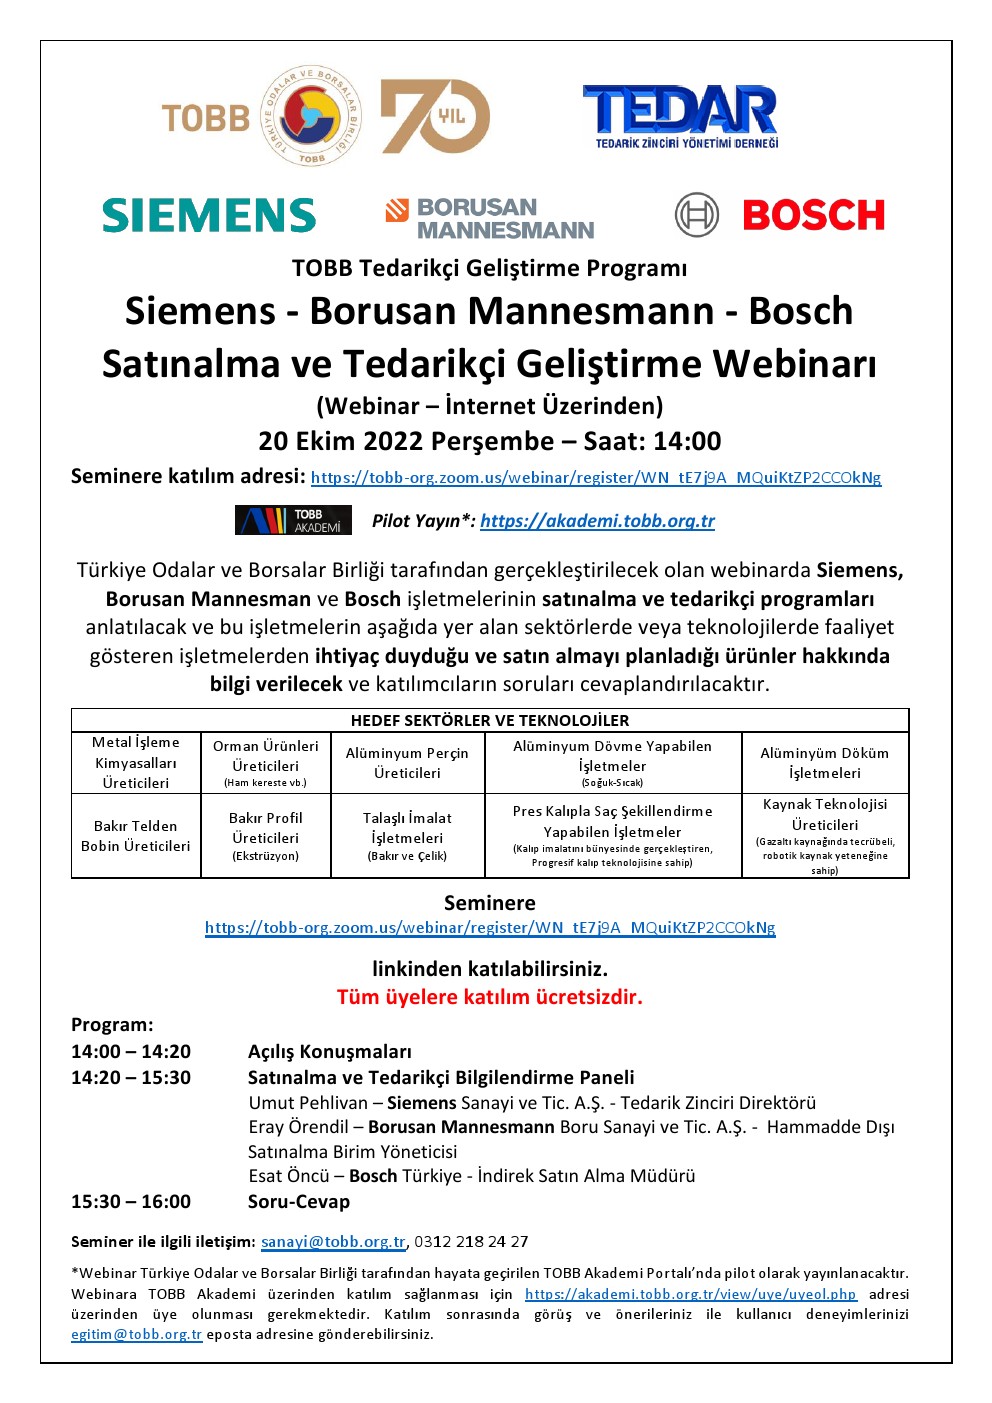 TOBB Tedarikçi Geliştirme Programı Siemens - Borusan Mannesmann - Bosch Satınalma ve Tedarikçi Geliştirme Webinarı